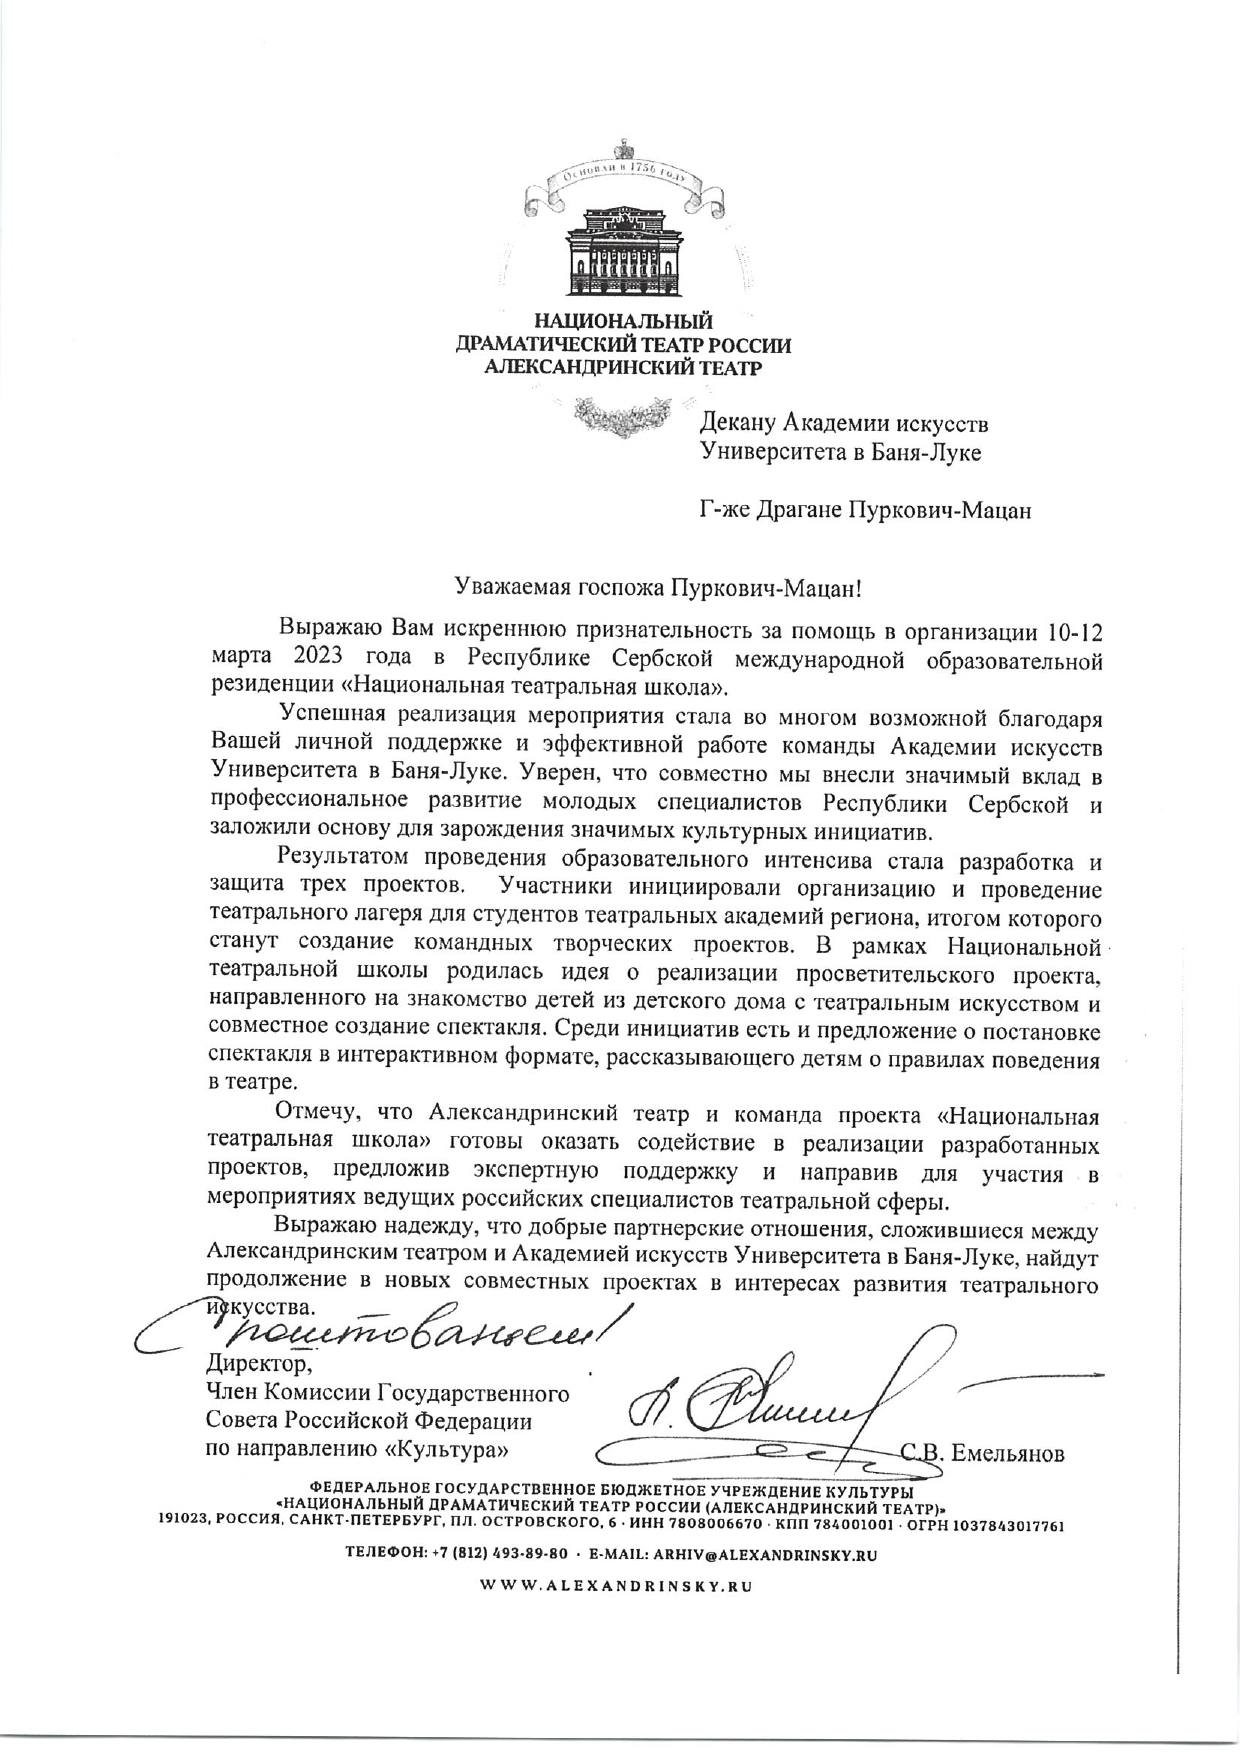 Pismo gospodina Sergeja Emeljinova, direktora Aleksandrinskog teatra, Rusija